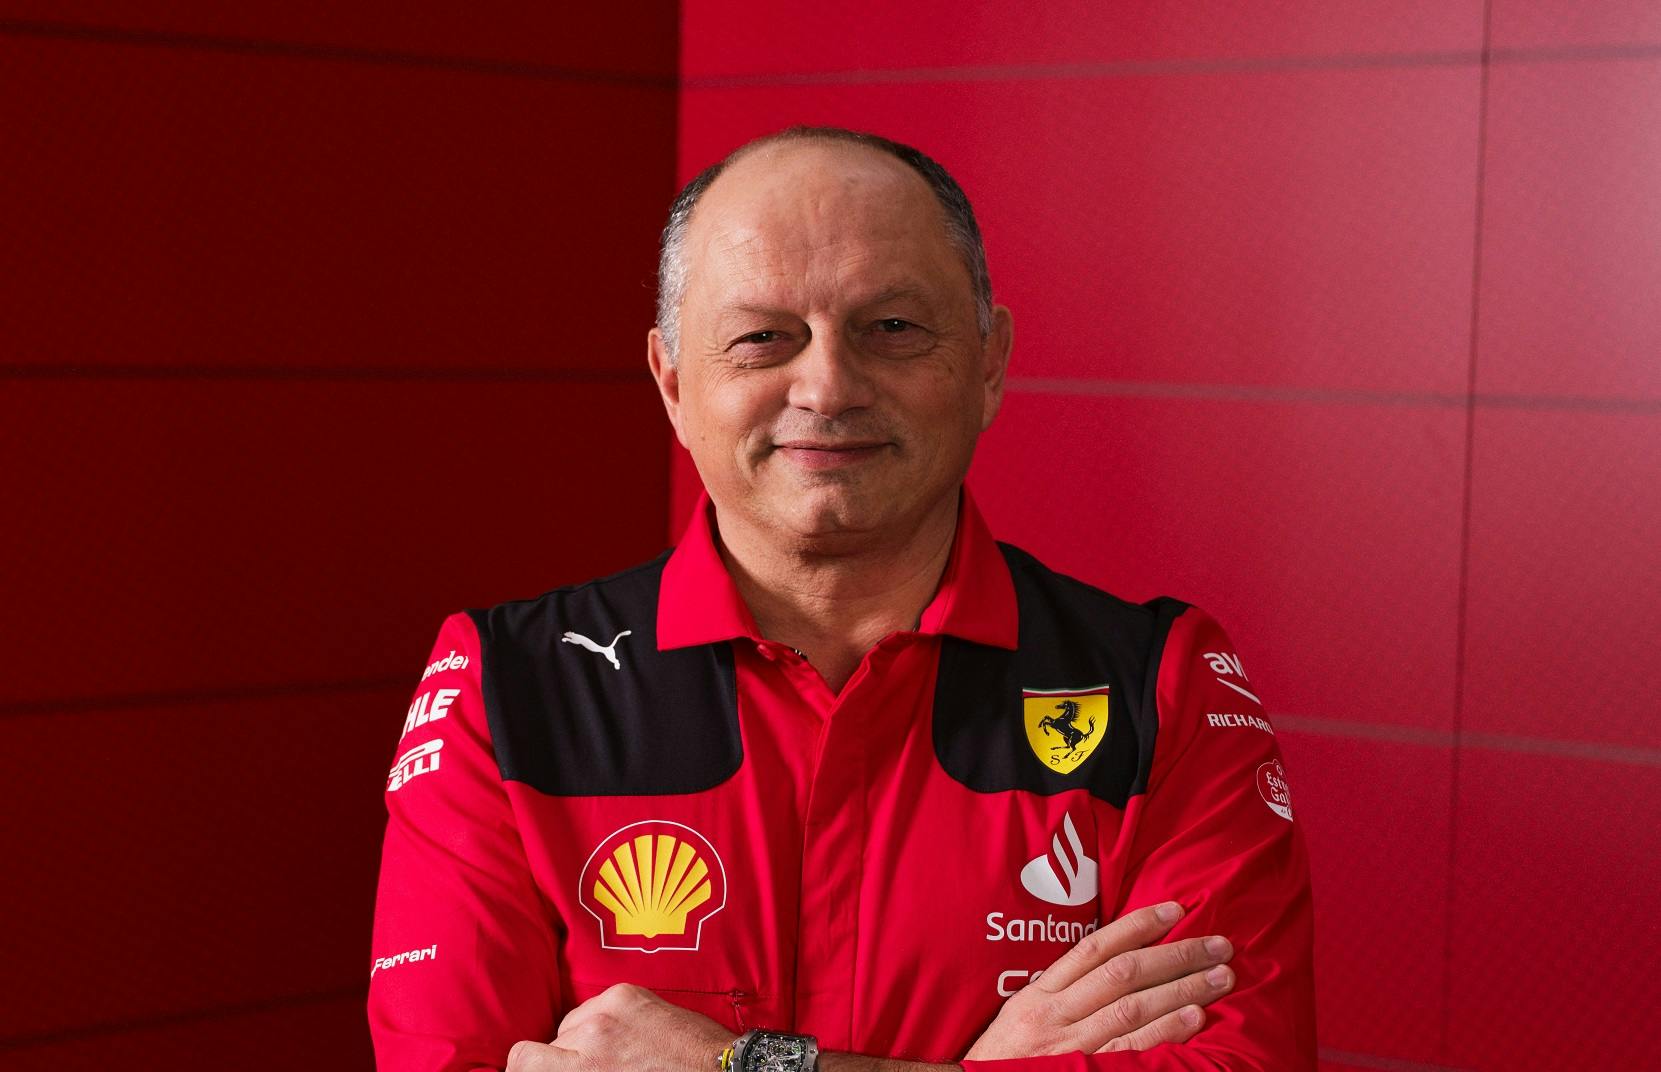 Ferrari wprowadziło zmiany w dziale strategii